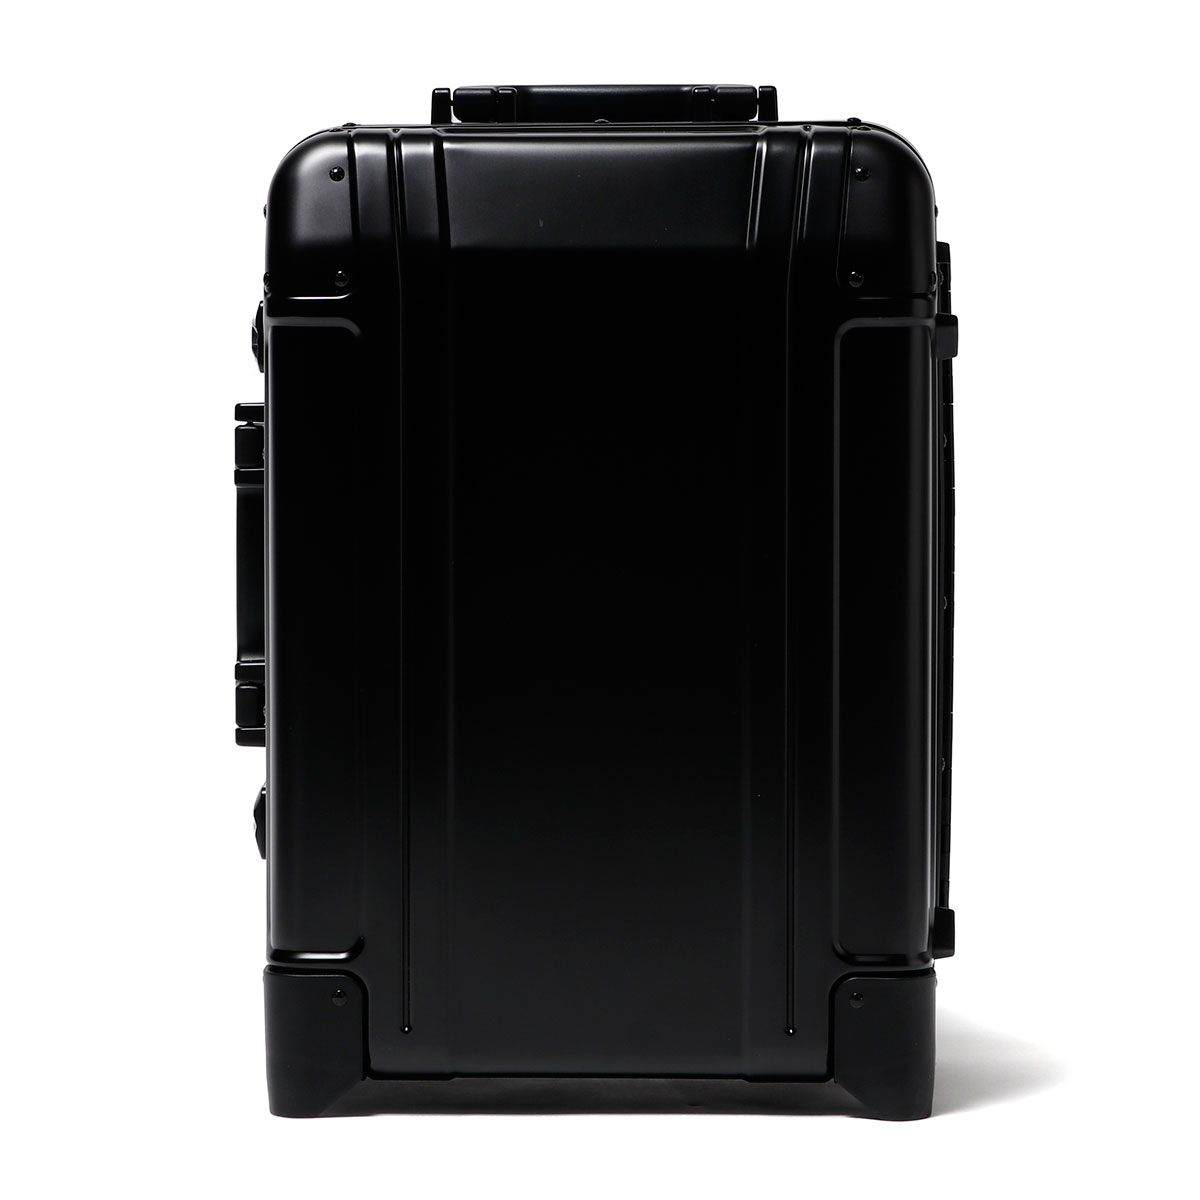 ゼロハリバートン 31 キャリーケース スーツケースの人気商品・通販 